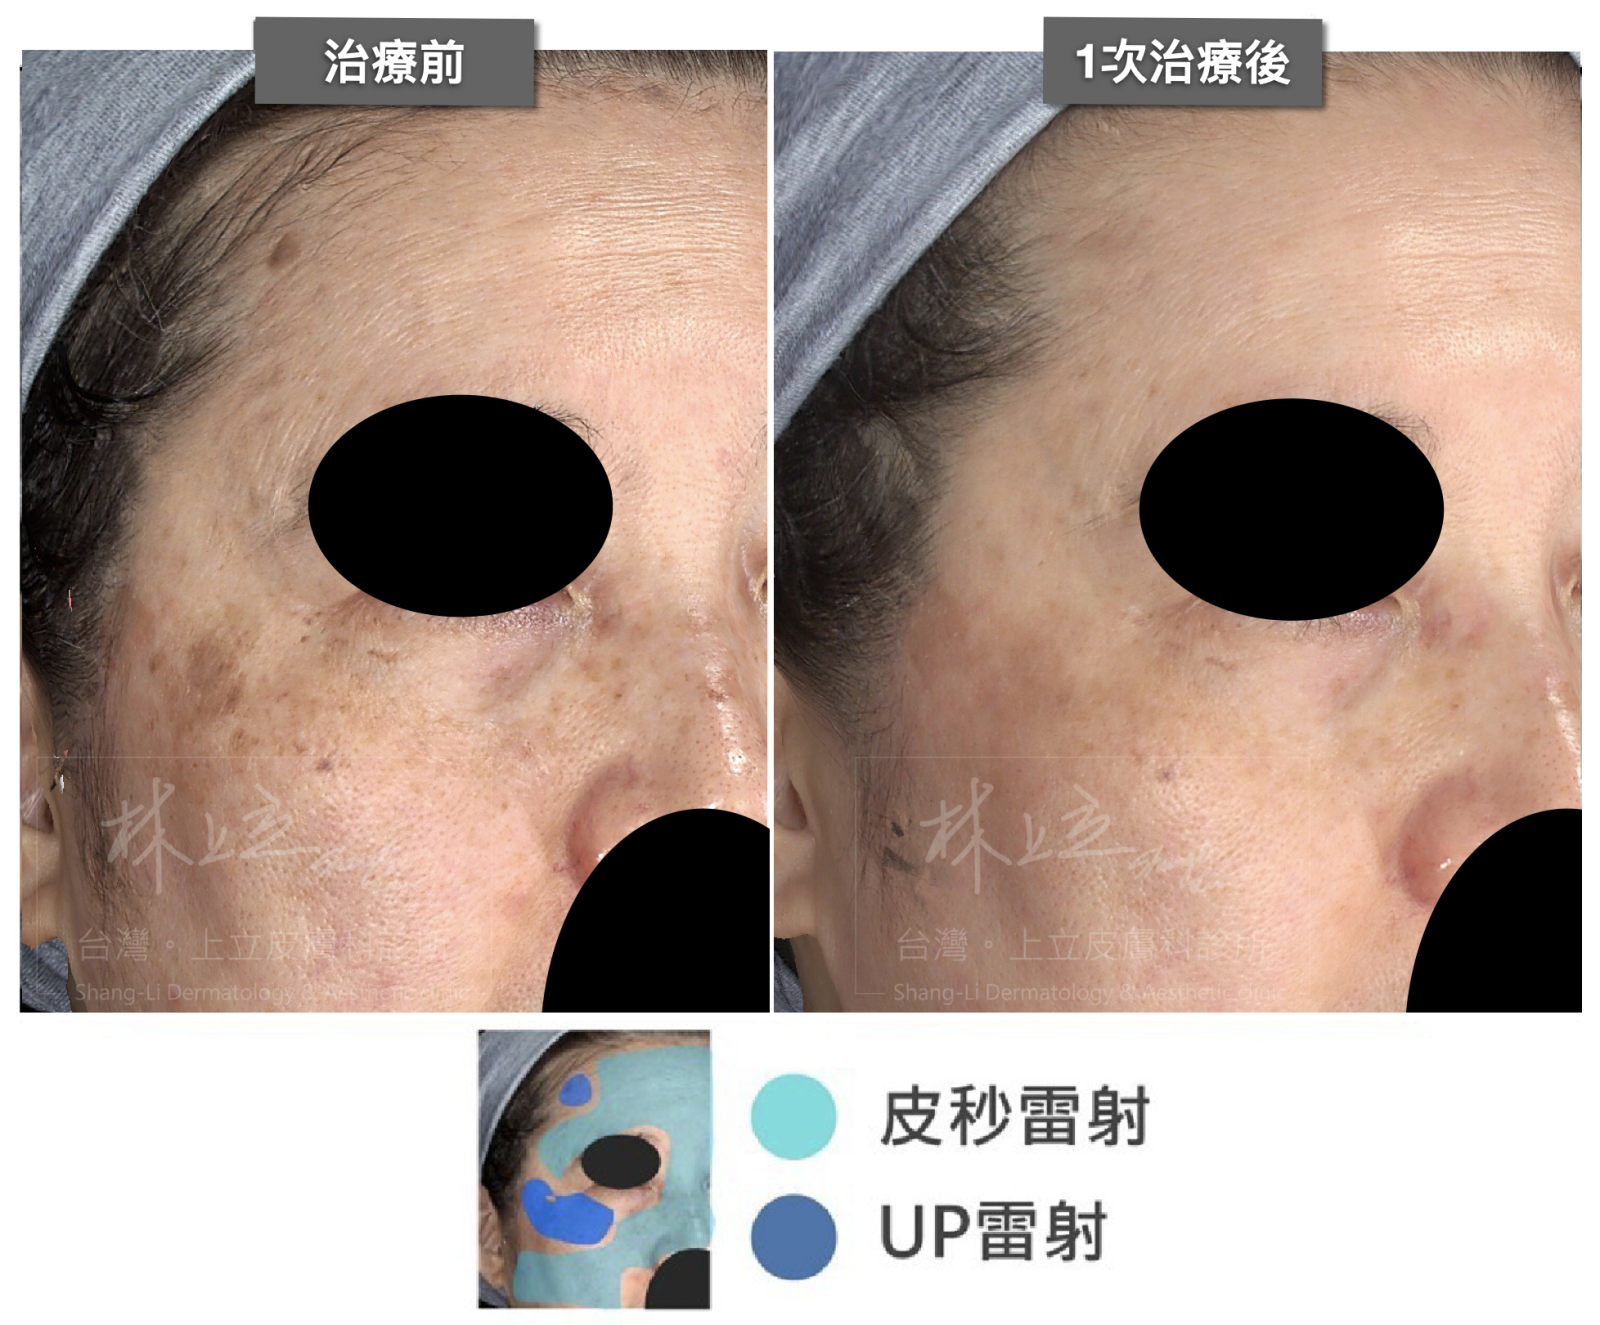 林上立醫師建議依照臉部狀況劃分出不同治療區塊，結合皮秒雷射和局部的UP雷射一起施打